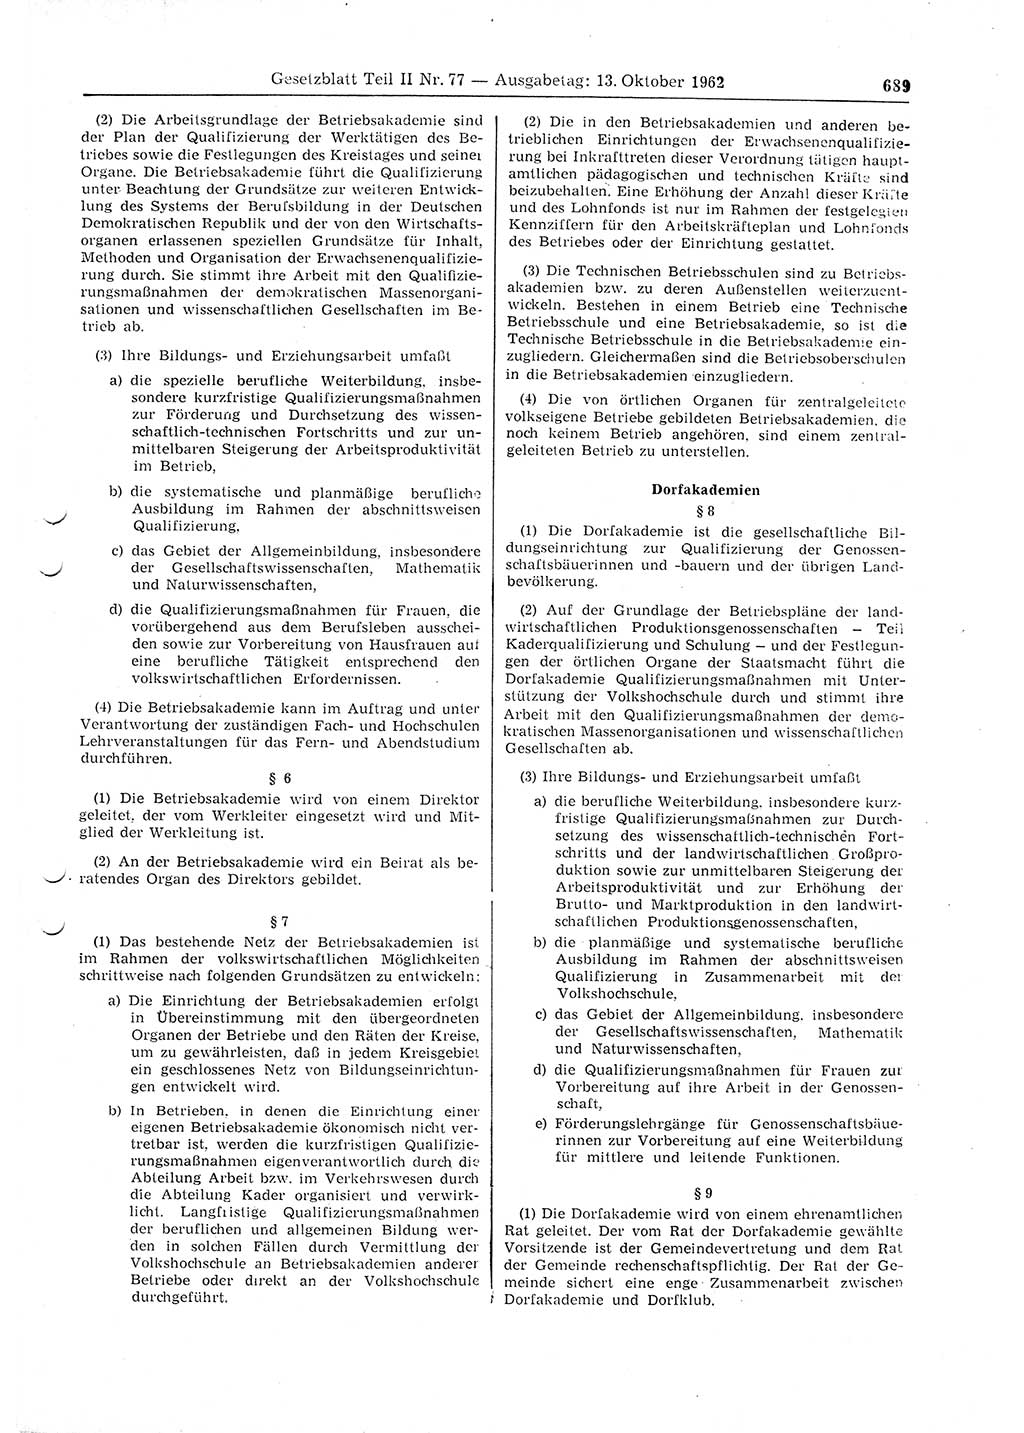 Gesetzblatt (GBl.) der Deutschen Demokratischen Republik (DDR) Teil ⅠⅠ 1962, Seite 689 (GBl. DDR ⅠⅠ 1962, S. 689)